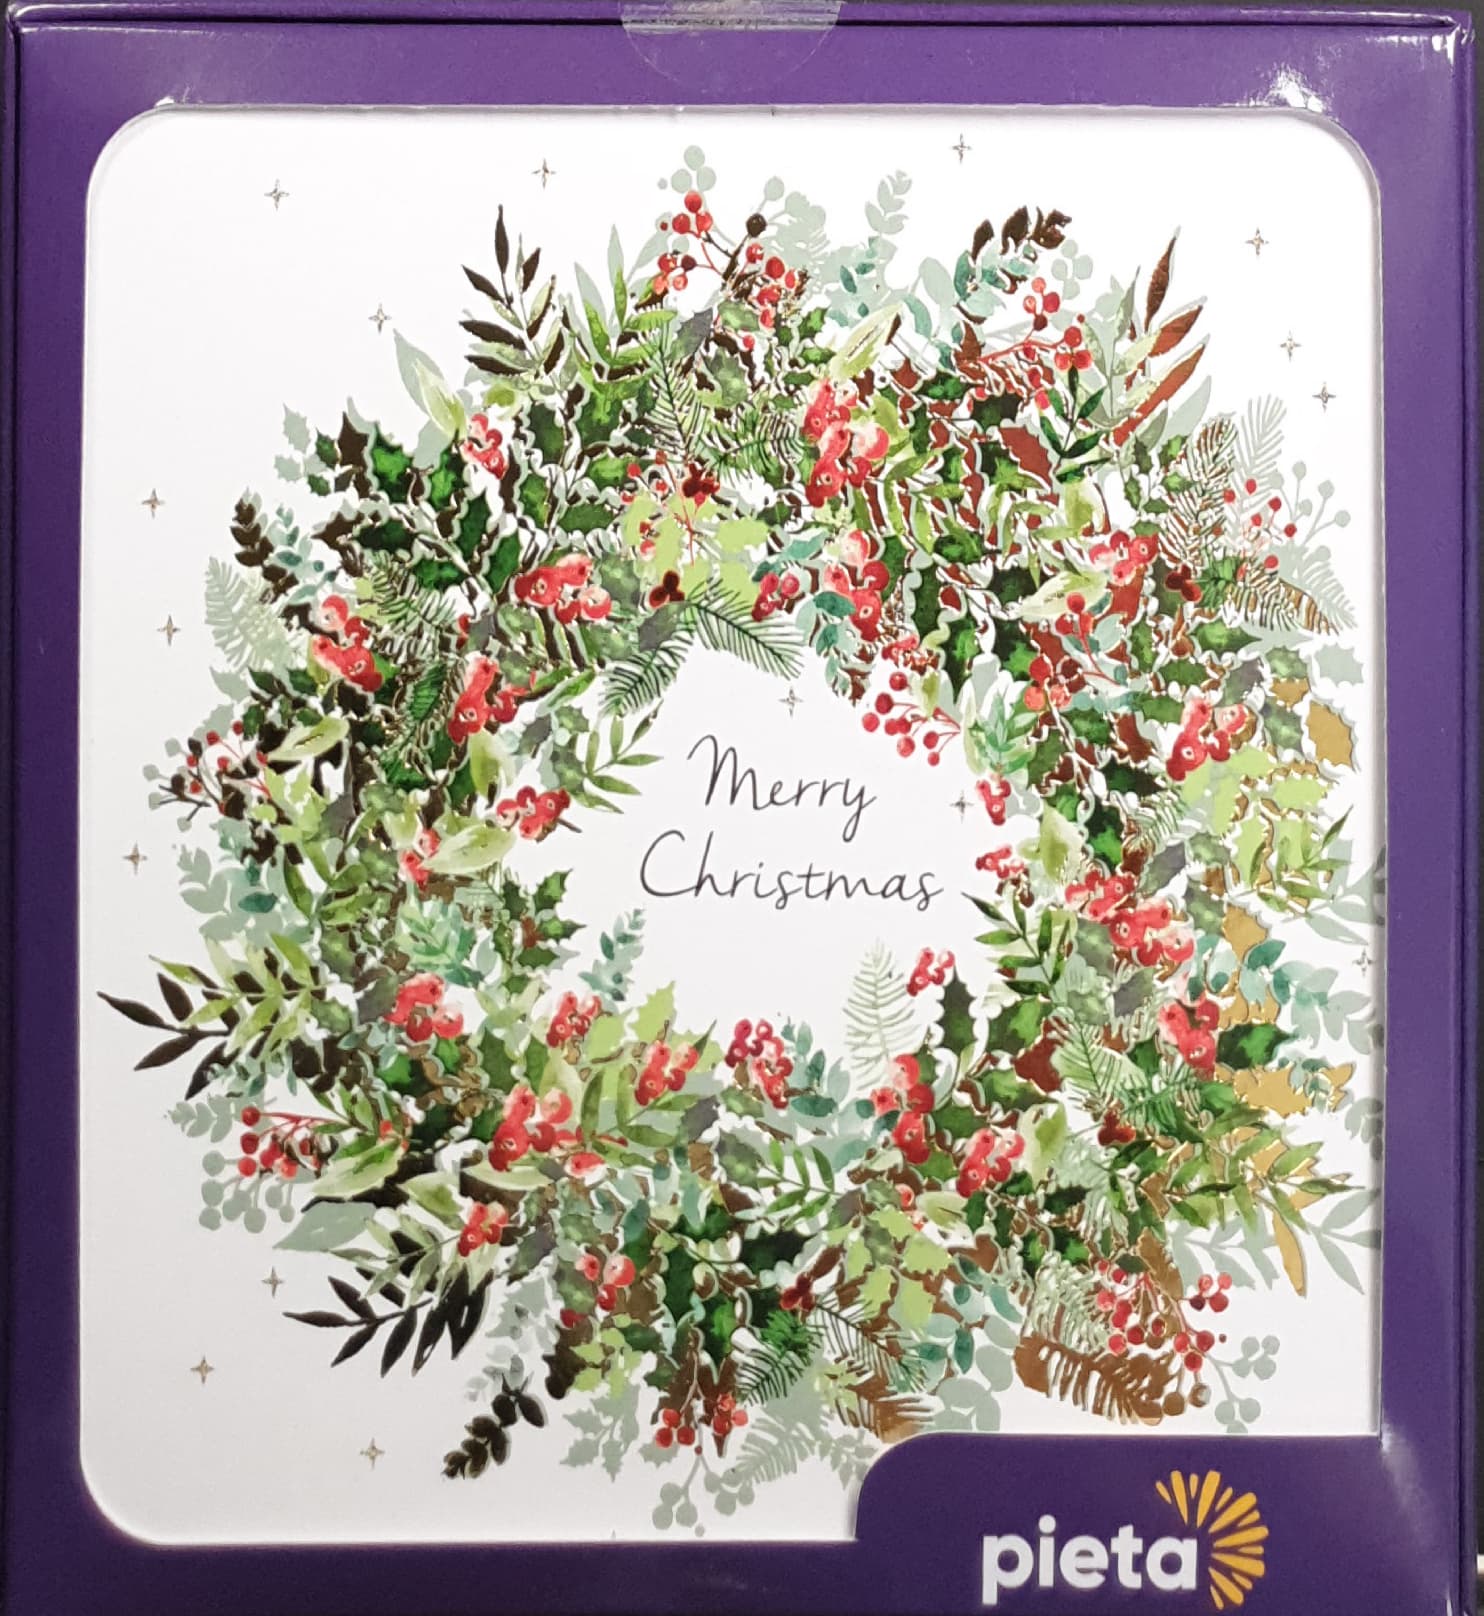 Charity Christmas Card (In Irish & English) - Box of 16 / Pieta - Christmas Wreath & Berries